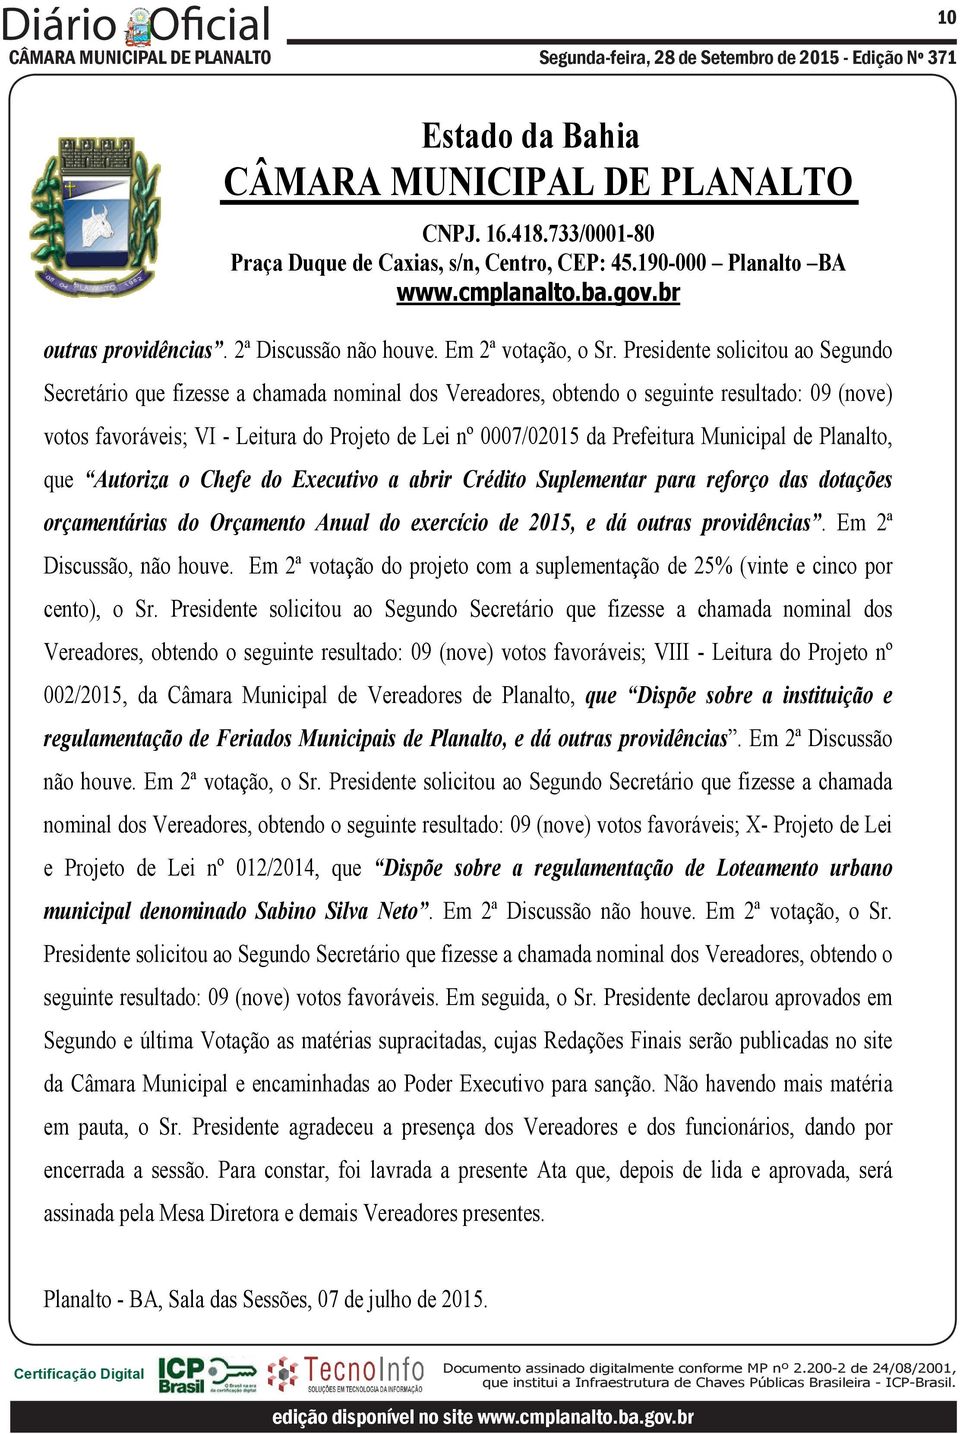 Prefeitura Municipal de Planalto, que Autoriza o Chefe do Executivo a abrir Crédito Suplementar para reforço das dotações orçamentárias do Orçamento Anual do exercício de 2015, e dá outras